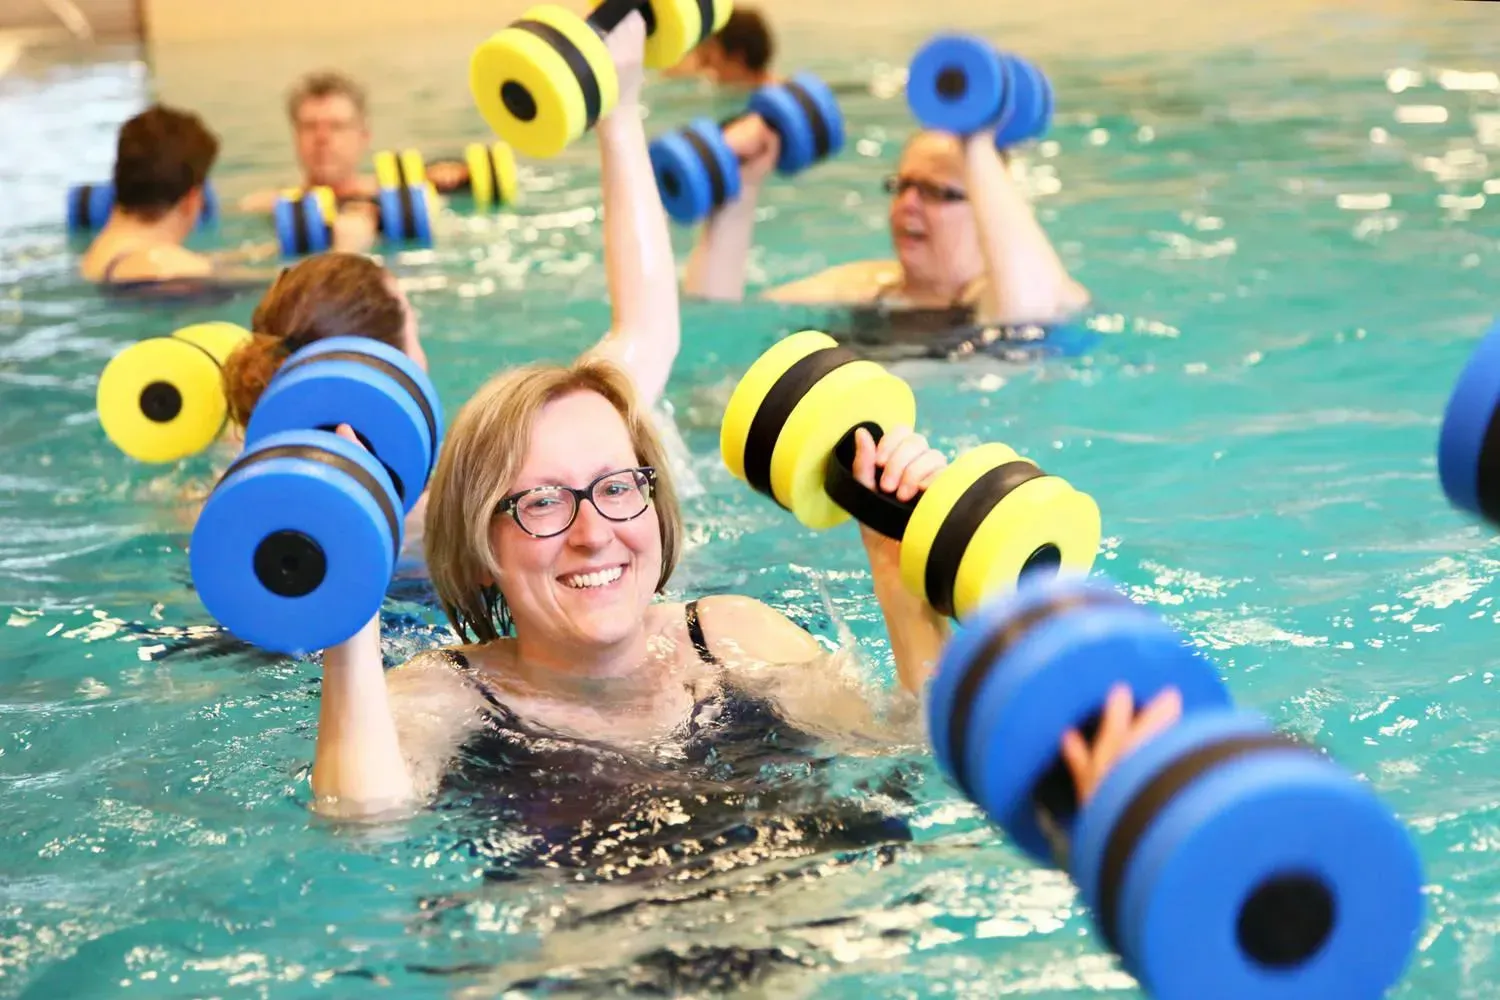 lachende vrouw met bril in het zwembad met blauw/gele gewichten in haar handen